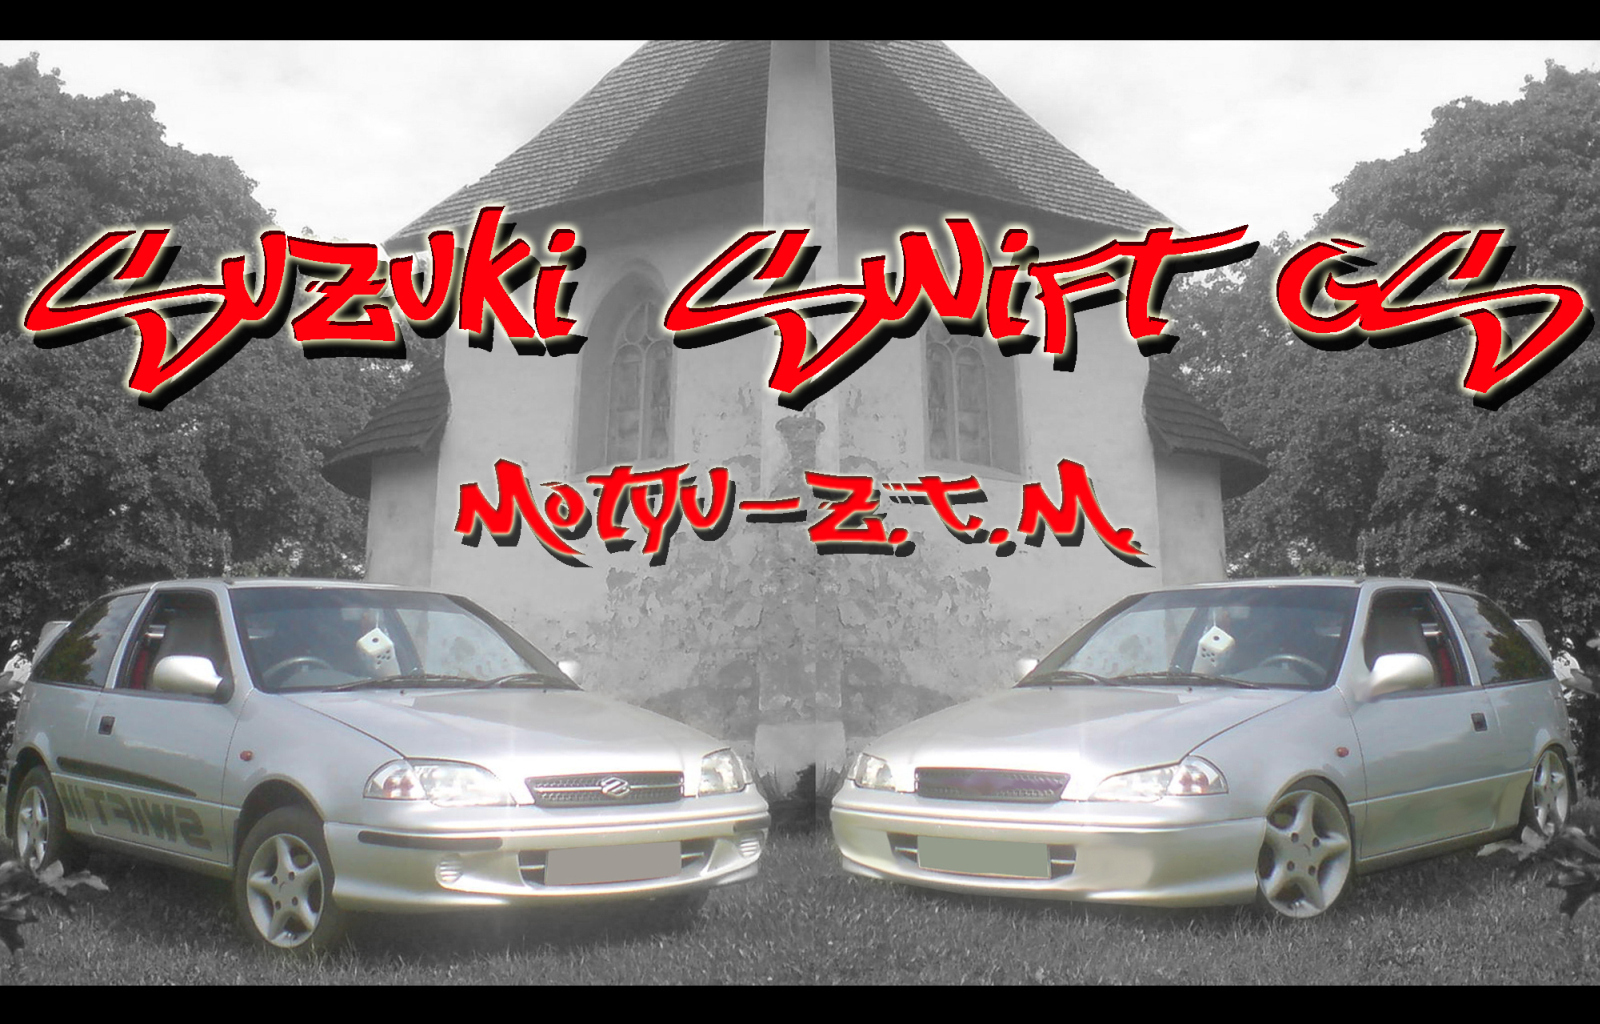 Suzuki Swift GS [Z.T.M]®